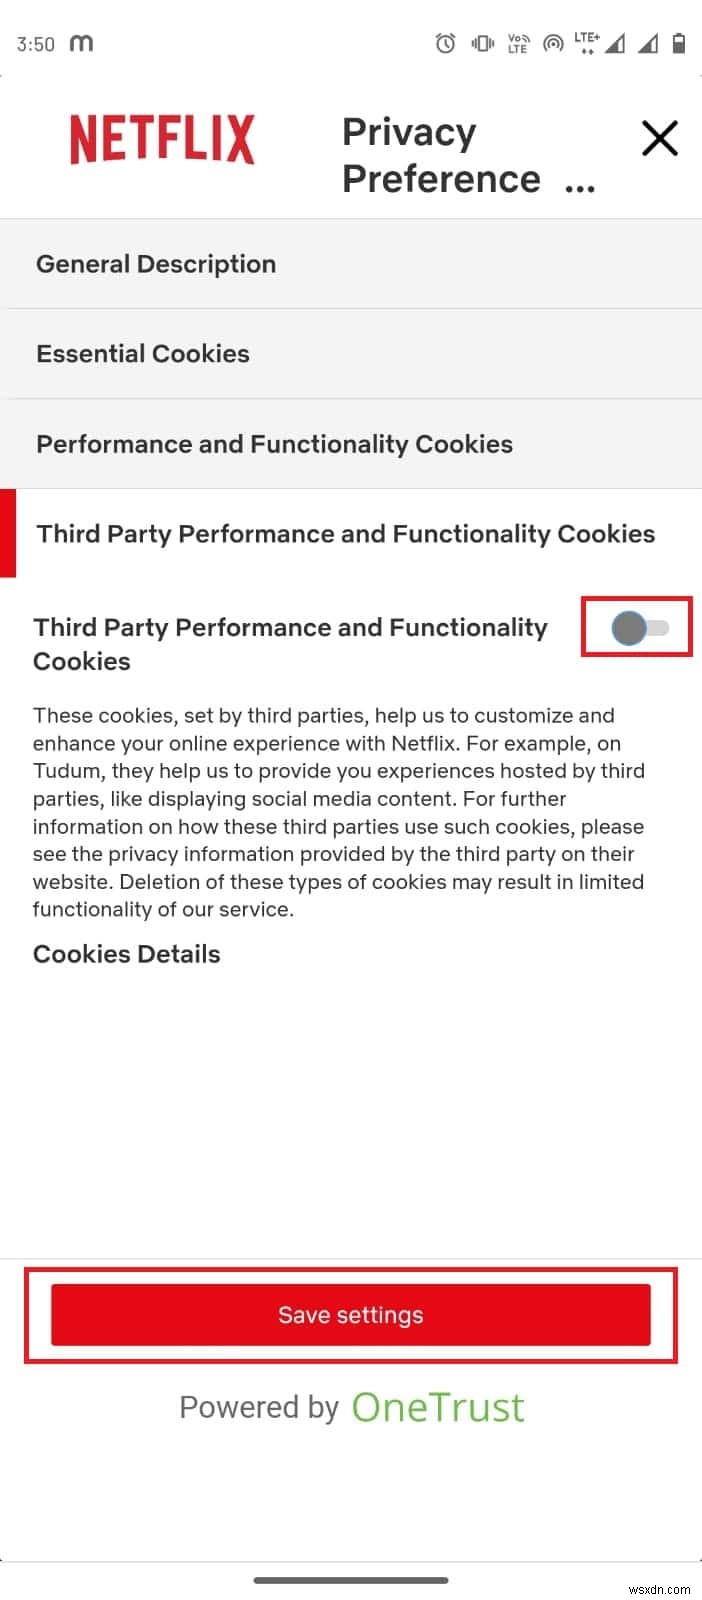 Cách xóa cookie Netflix trên Android